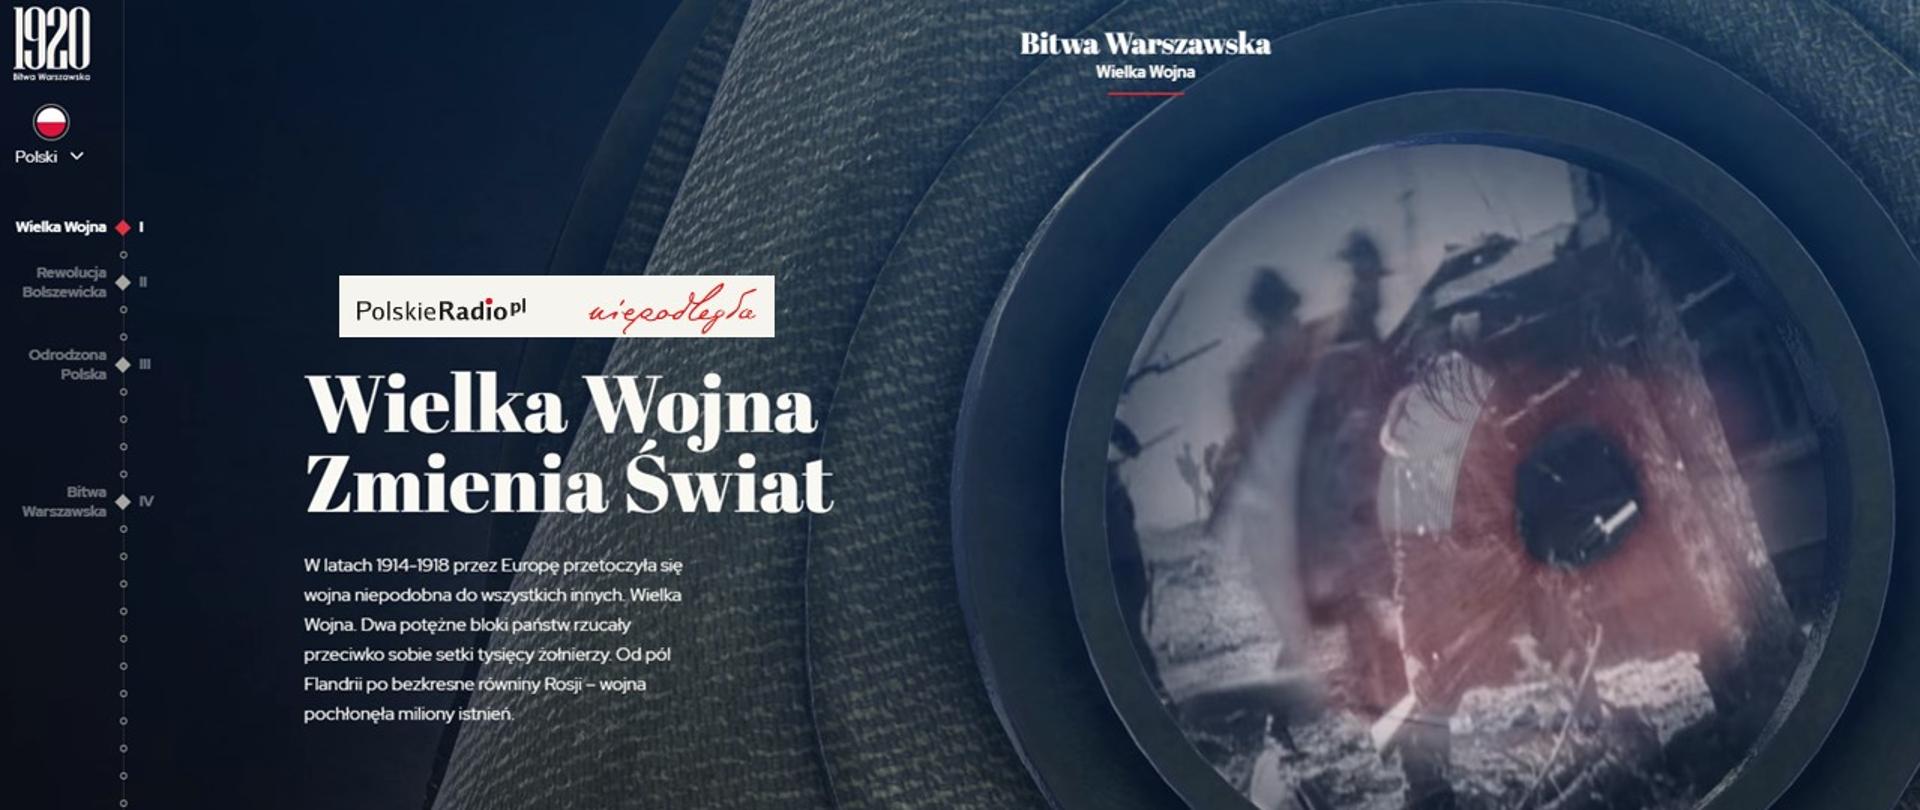 Bitwa 1920. – nowy serwis internetowy Biura Programu „Niepodległej" i Polskiego Radia 